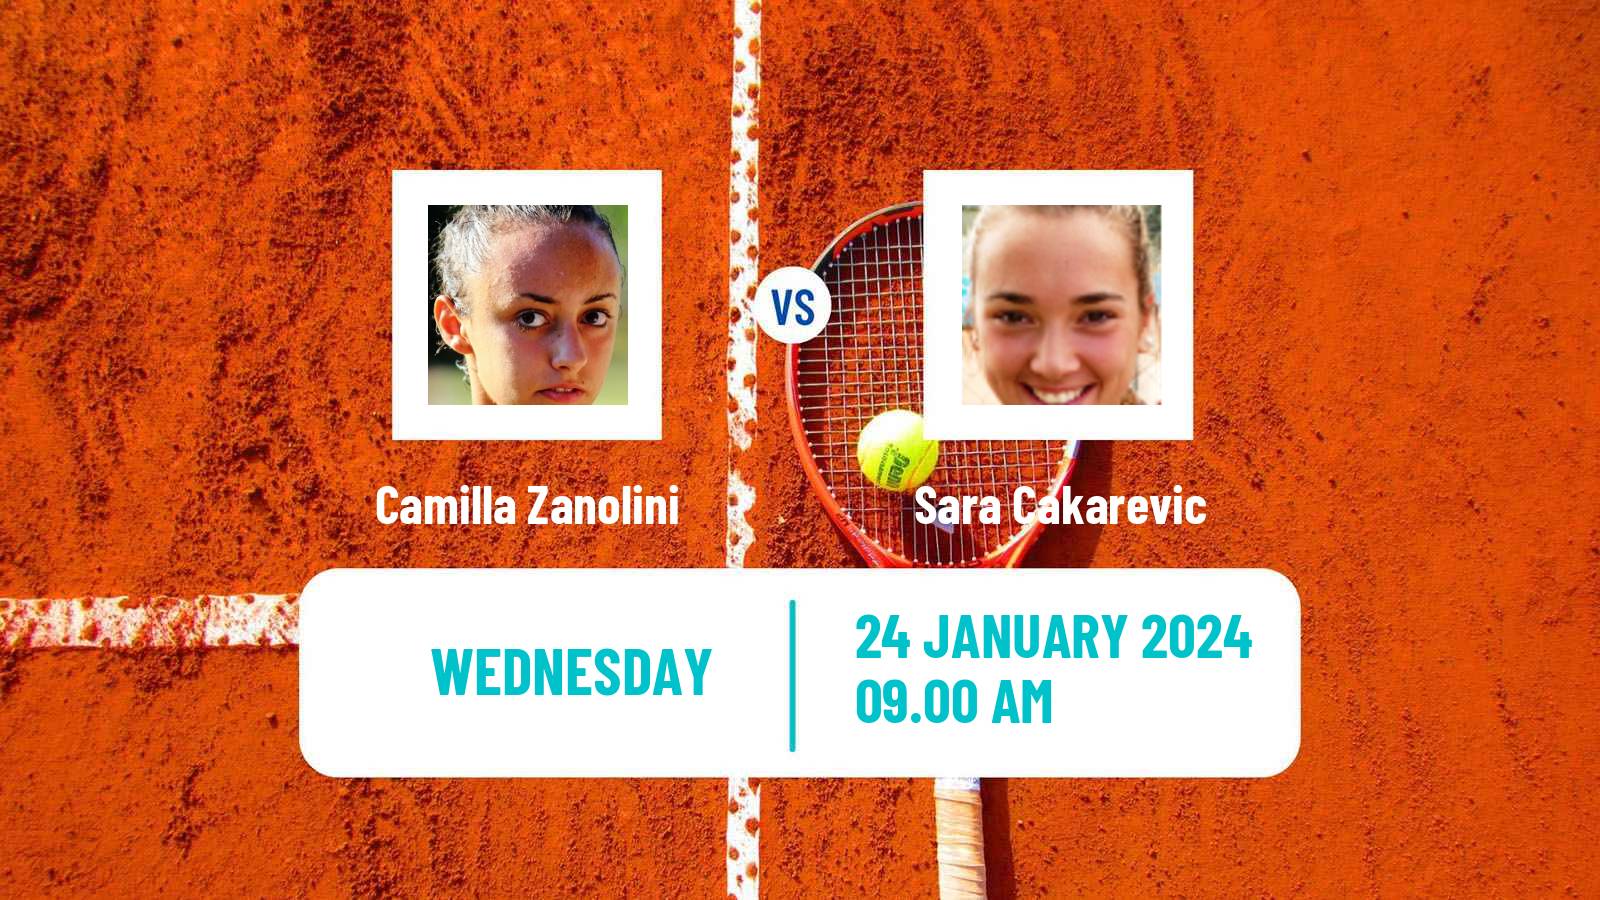 Tennis ITF W35 Buenos Aires 2 Women Camilla Zanolini - Sara Cakarevic